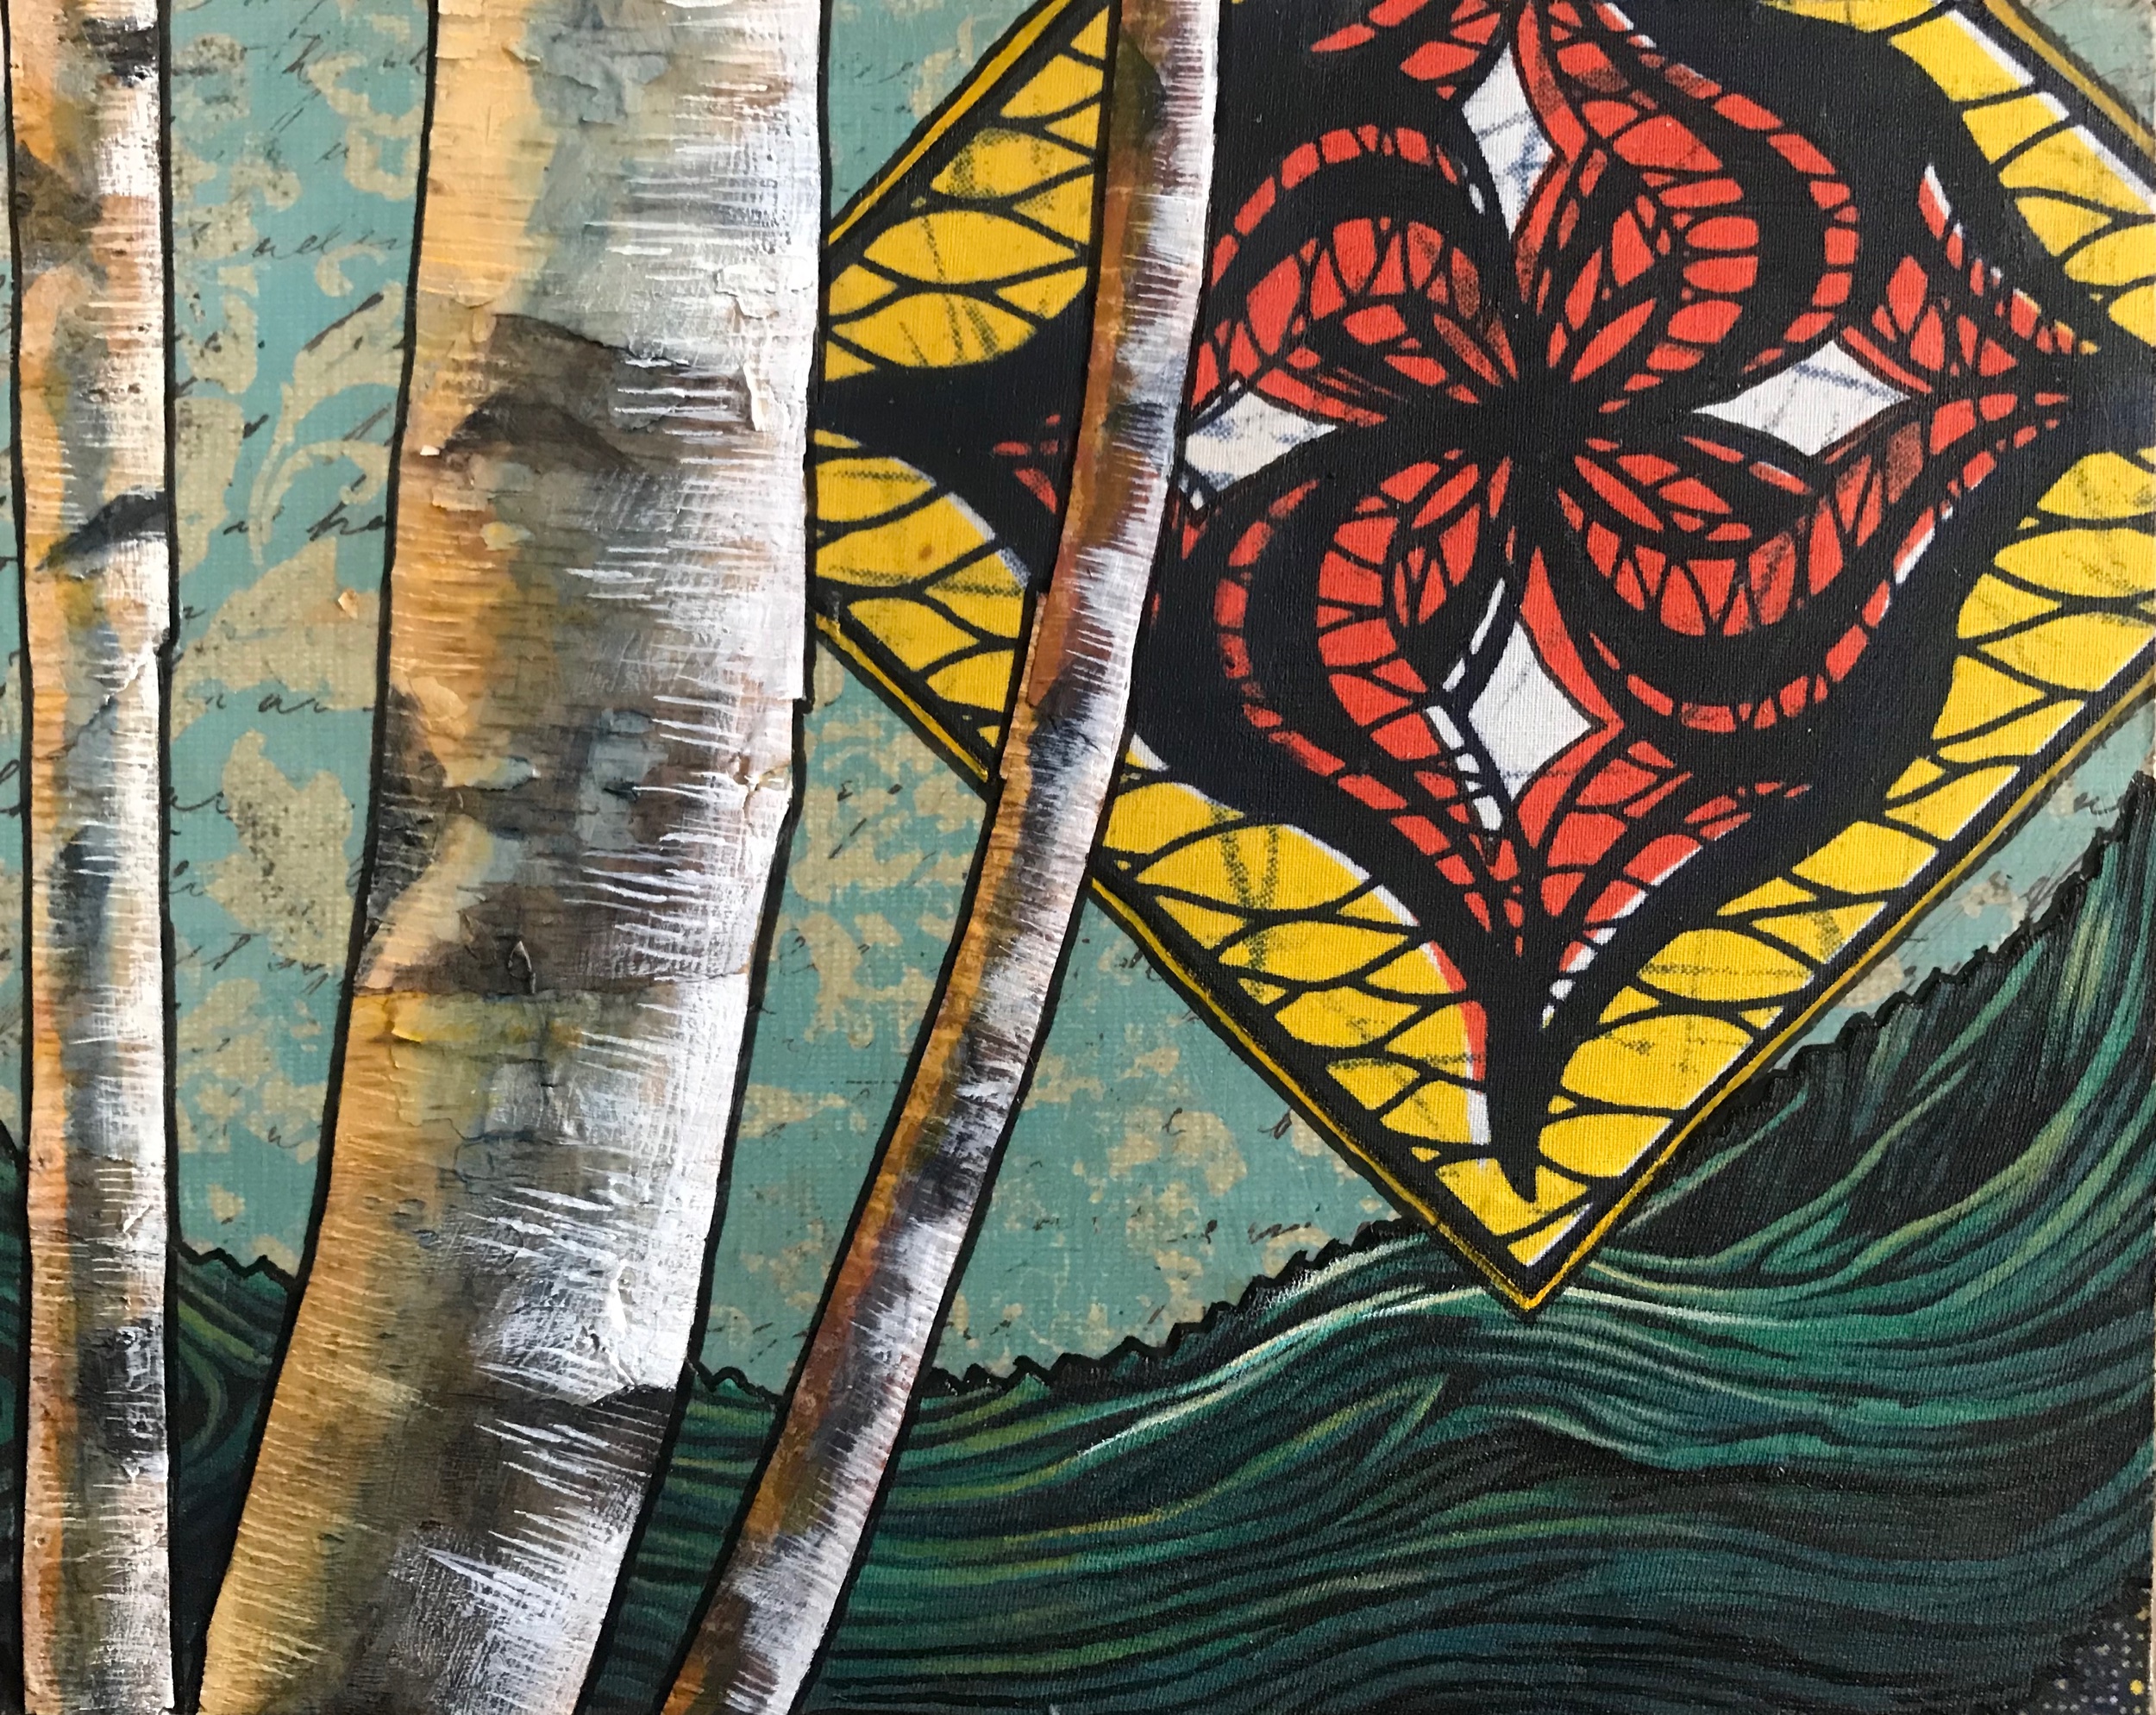  Mixed Media: birch bark and acrylic on fabric. 8” x 10” 